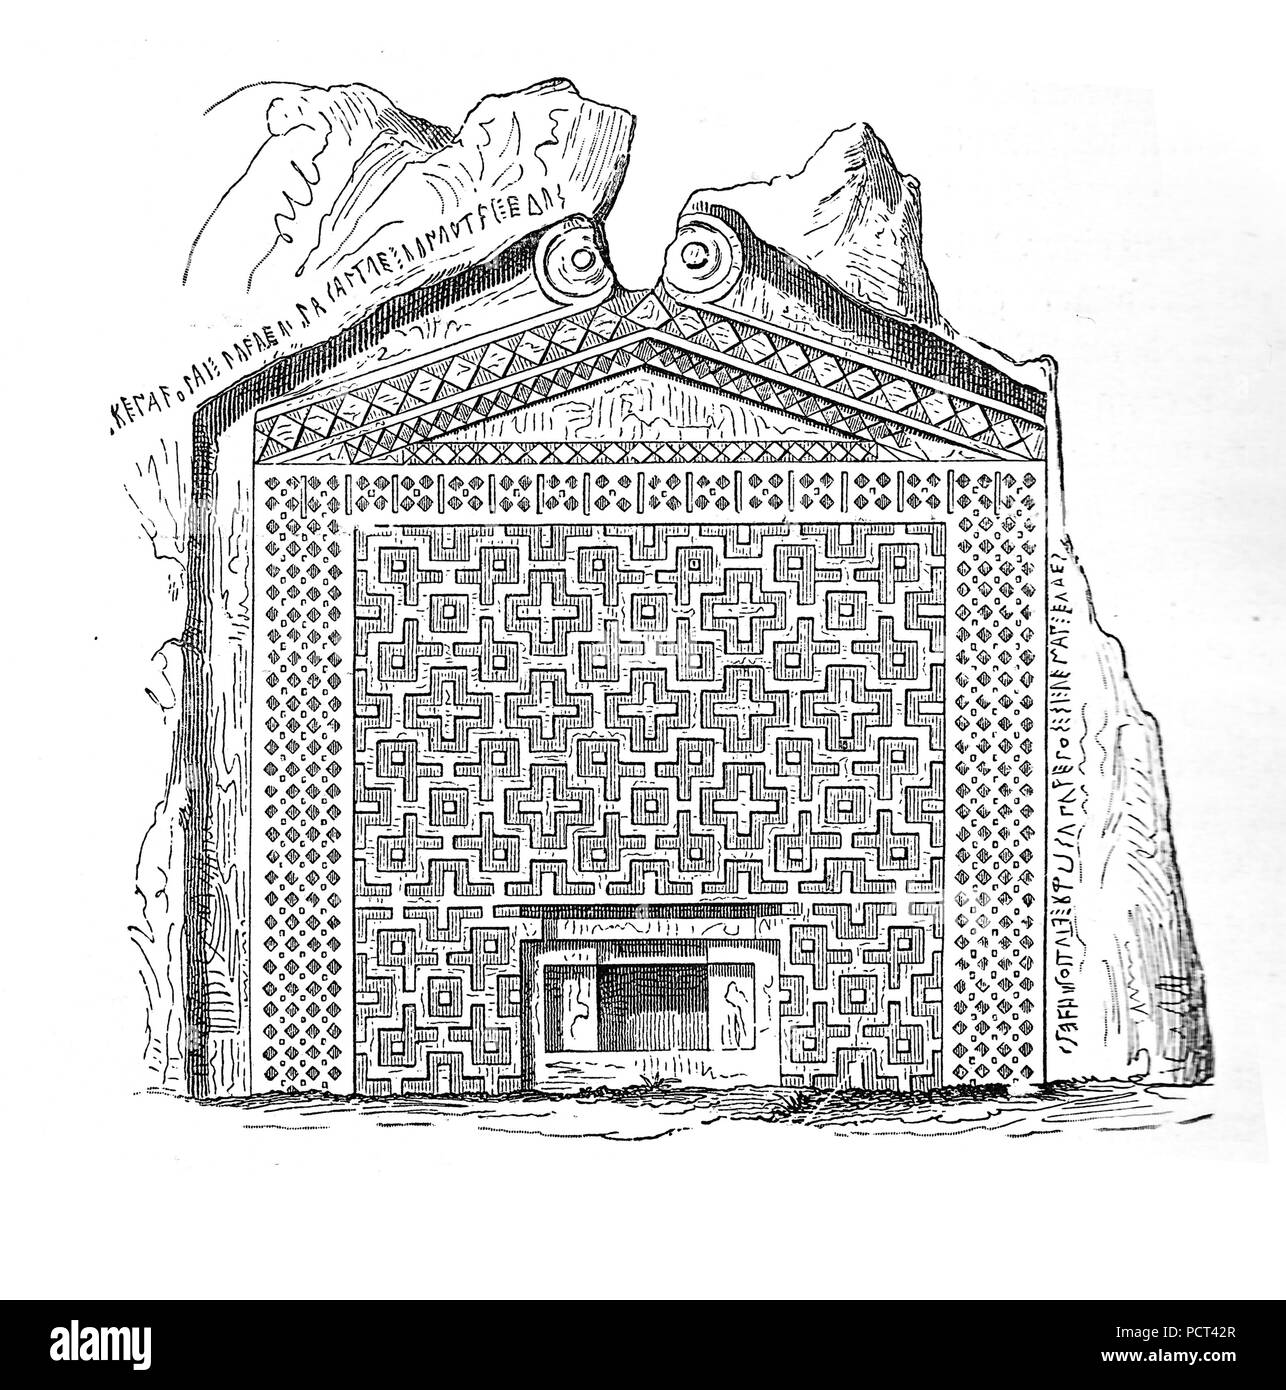 Tombeau du roi Midas à Dogan-lu (Doganli) dans la vallée, AsianTurkey Phyrgia, construites au 8ème siècle avant J.-C., gravure d'époque Banque D'Images